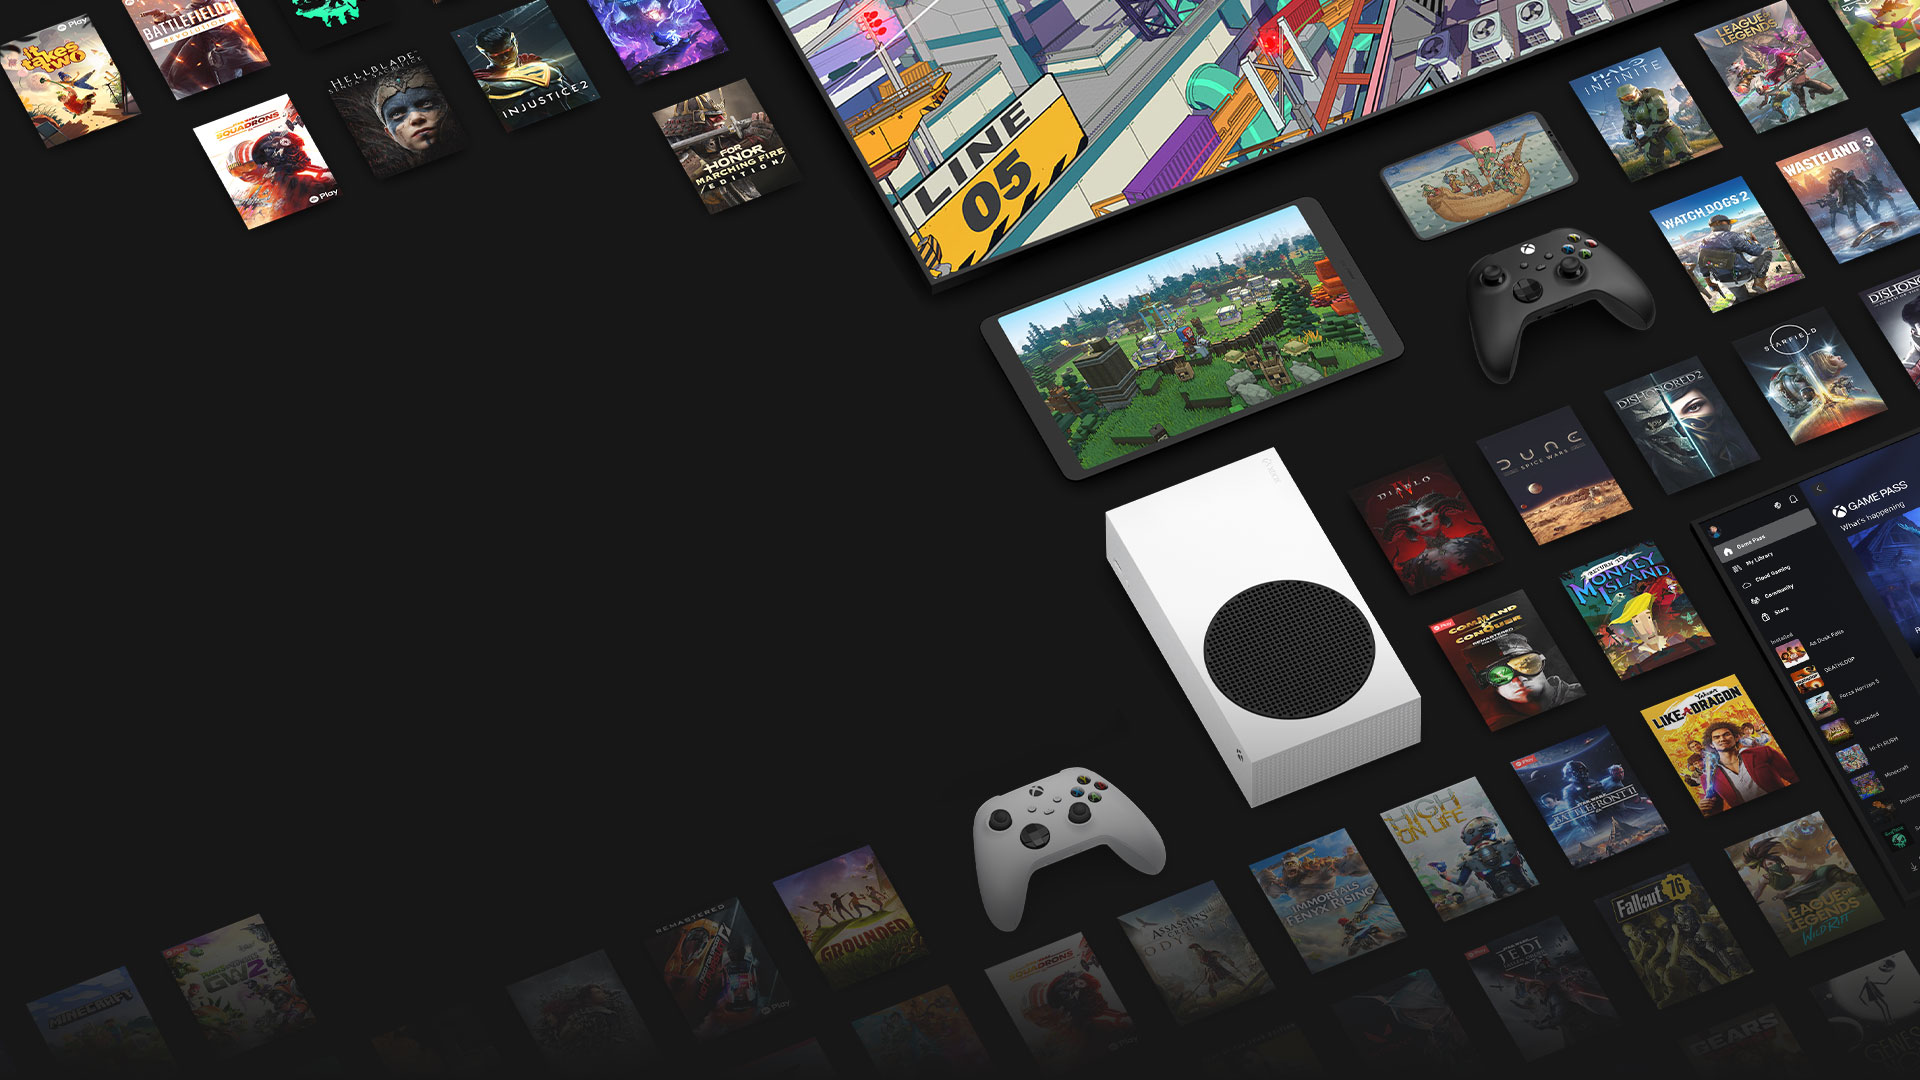 Mostantól az Xbox Game Pass Ultimate előfizetéssel is elérhető számos játék grafikája, melyet több eszköz, köztük konzol, számítógép, táblagép és intelligens TV vesz körbe.